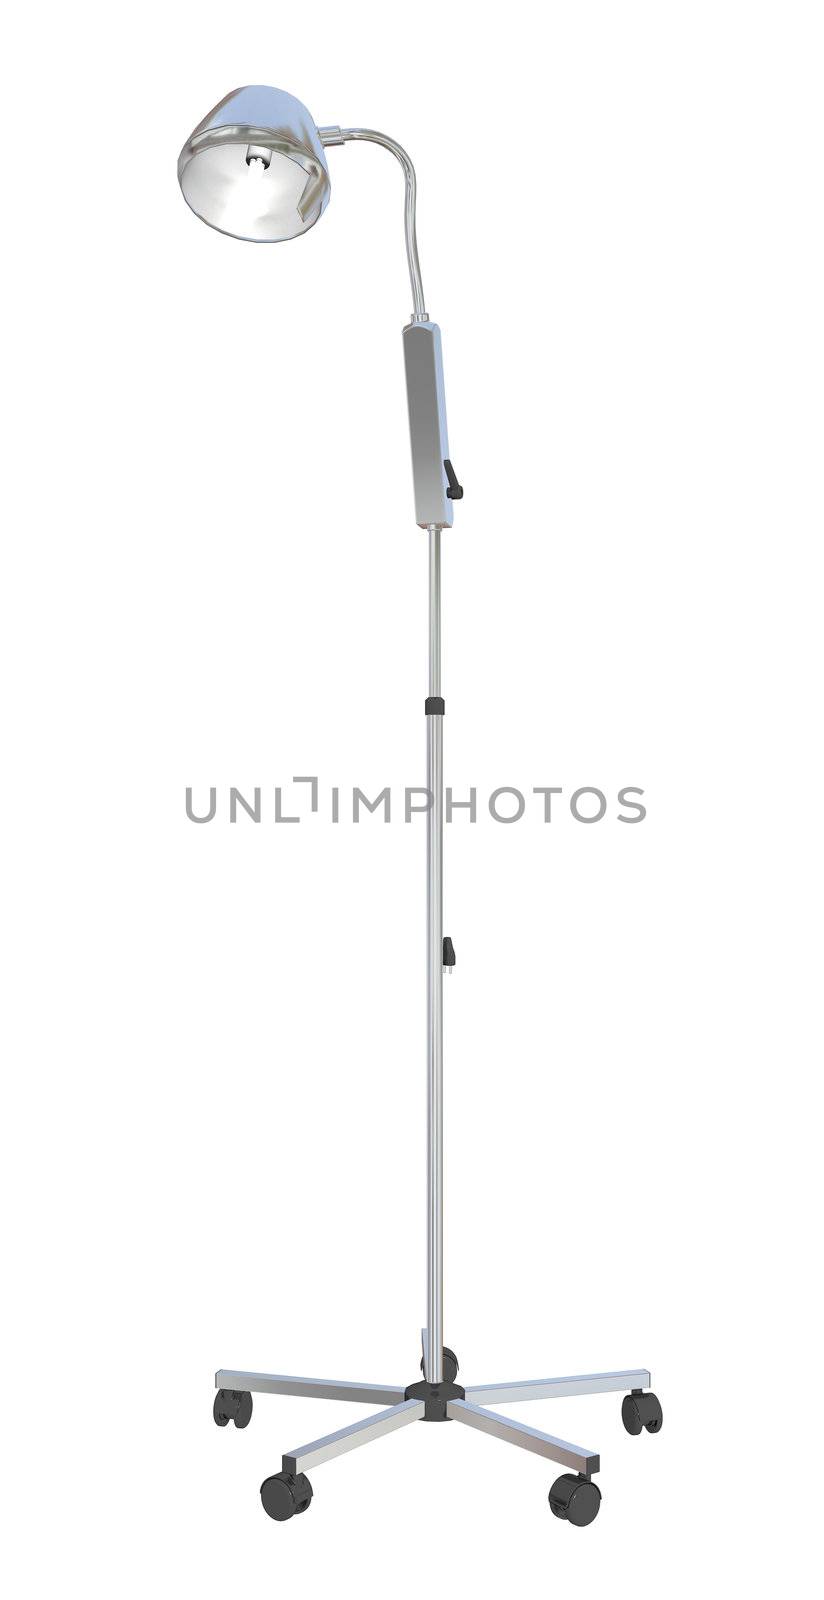 Adjustable metal mobile medical stand lamp, 3d illustration by Morphart